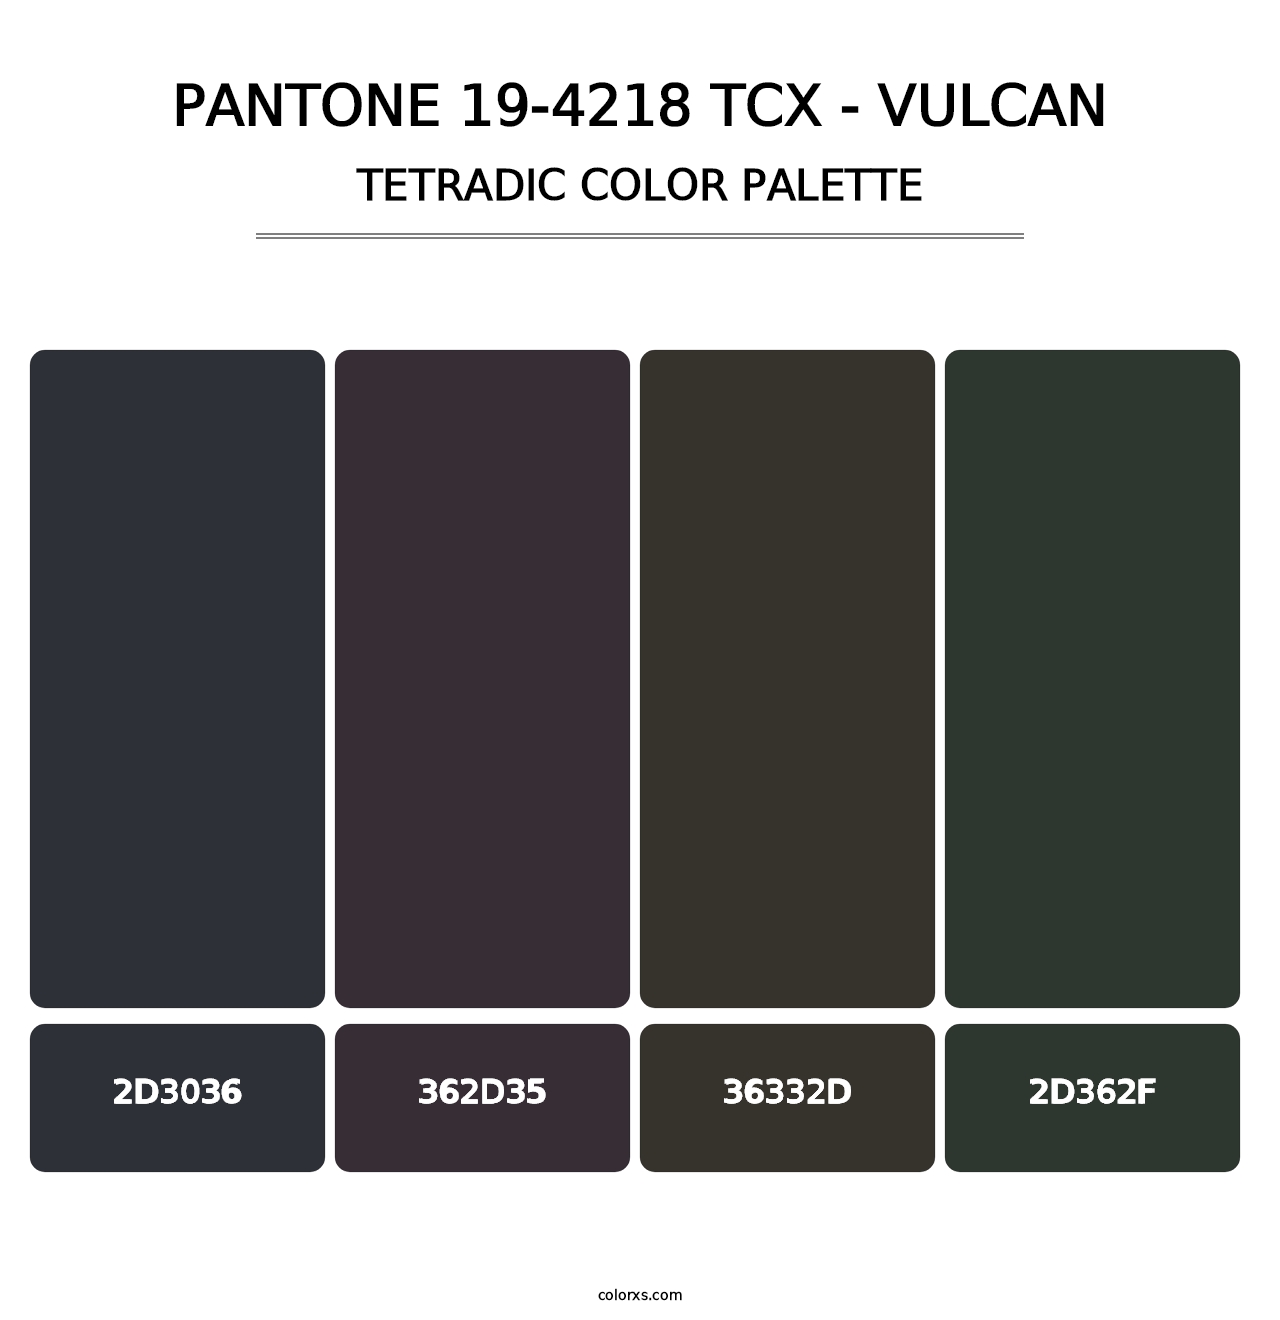 PANTONE 19-4218 TCX - Vulcan - Tetradic Color Palette